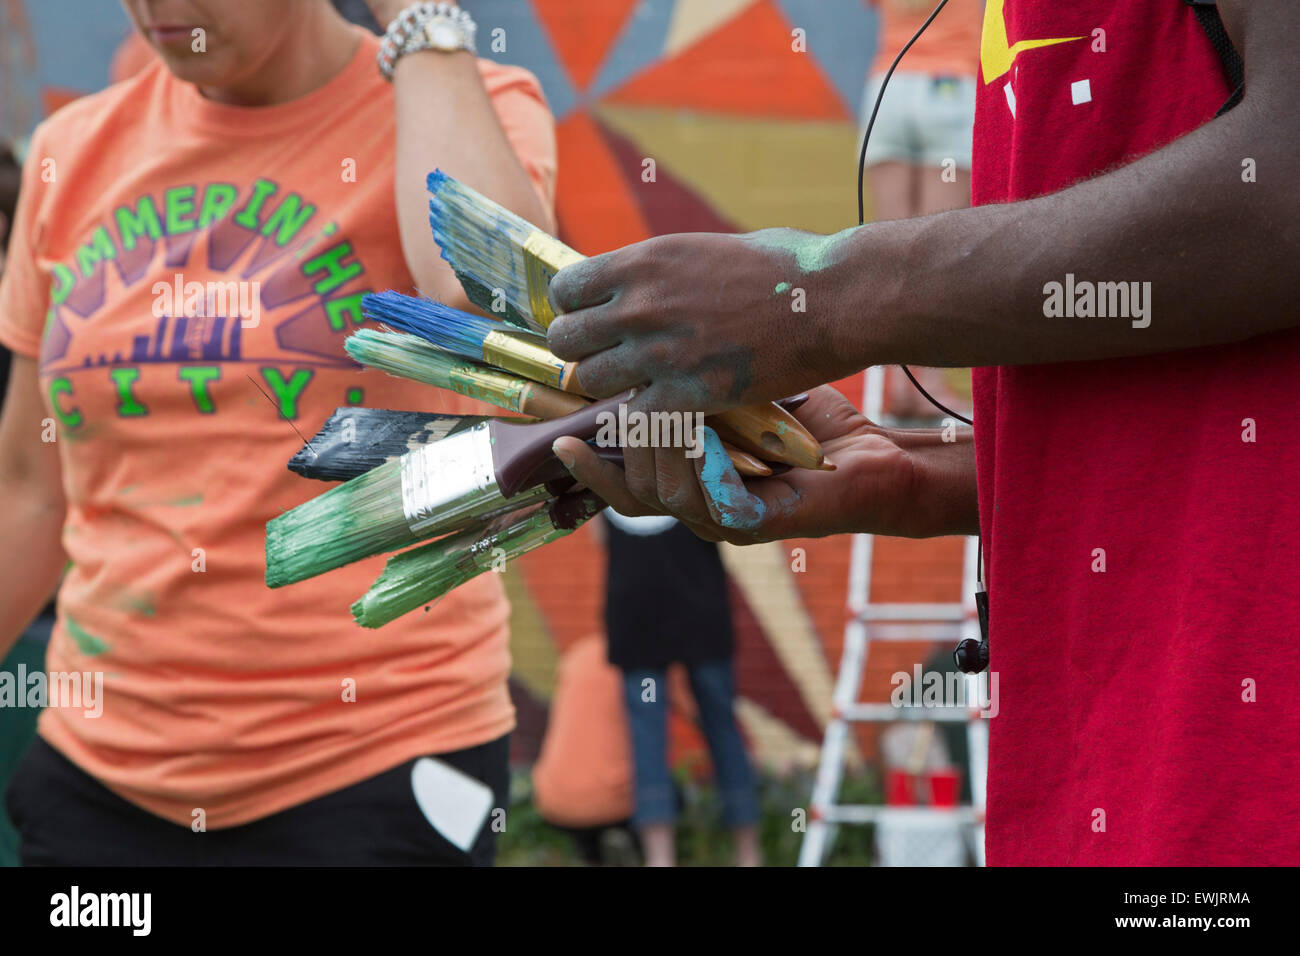 Detroit, Michigan - Adultos jóvenes limpiar los cepillos después de pintar una pared en el suroeste de Detroit. Foto de stock